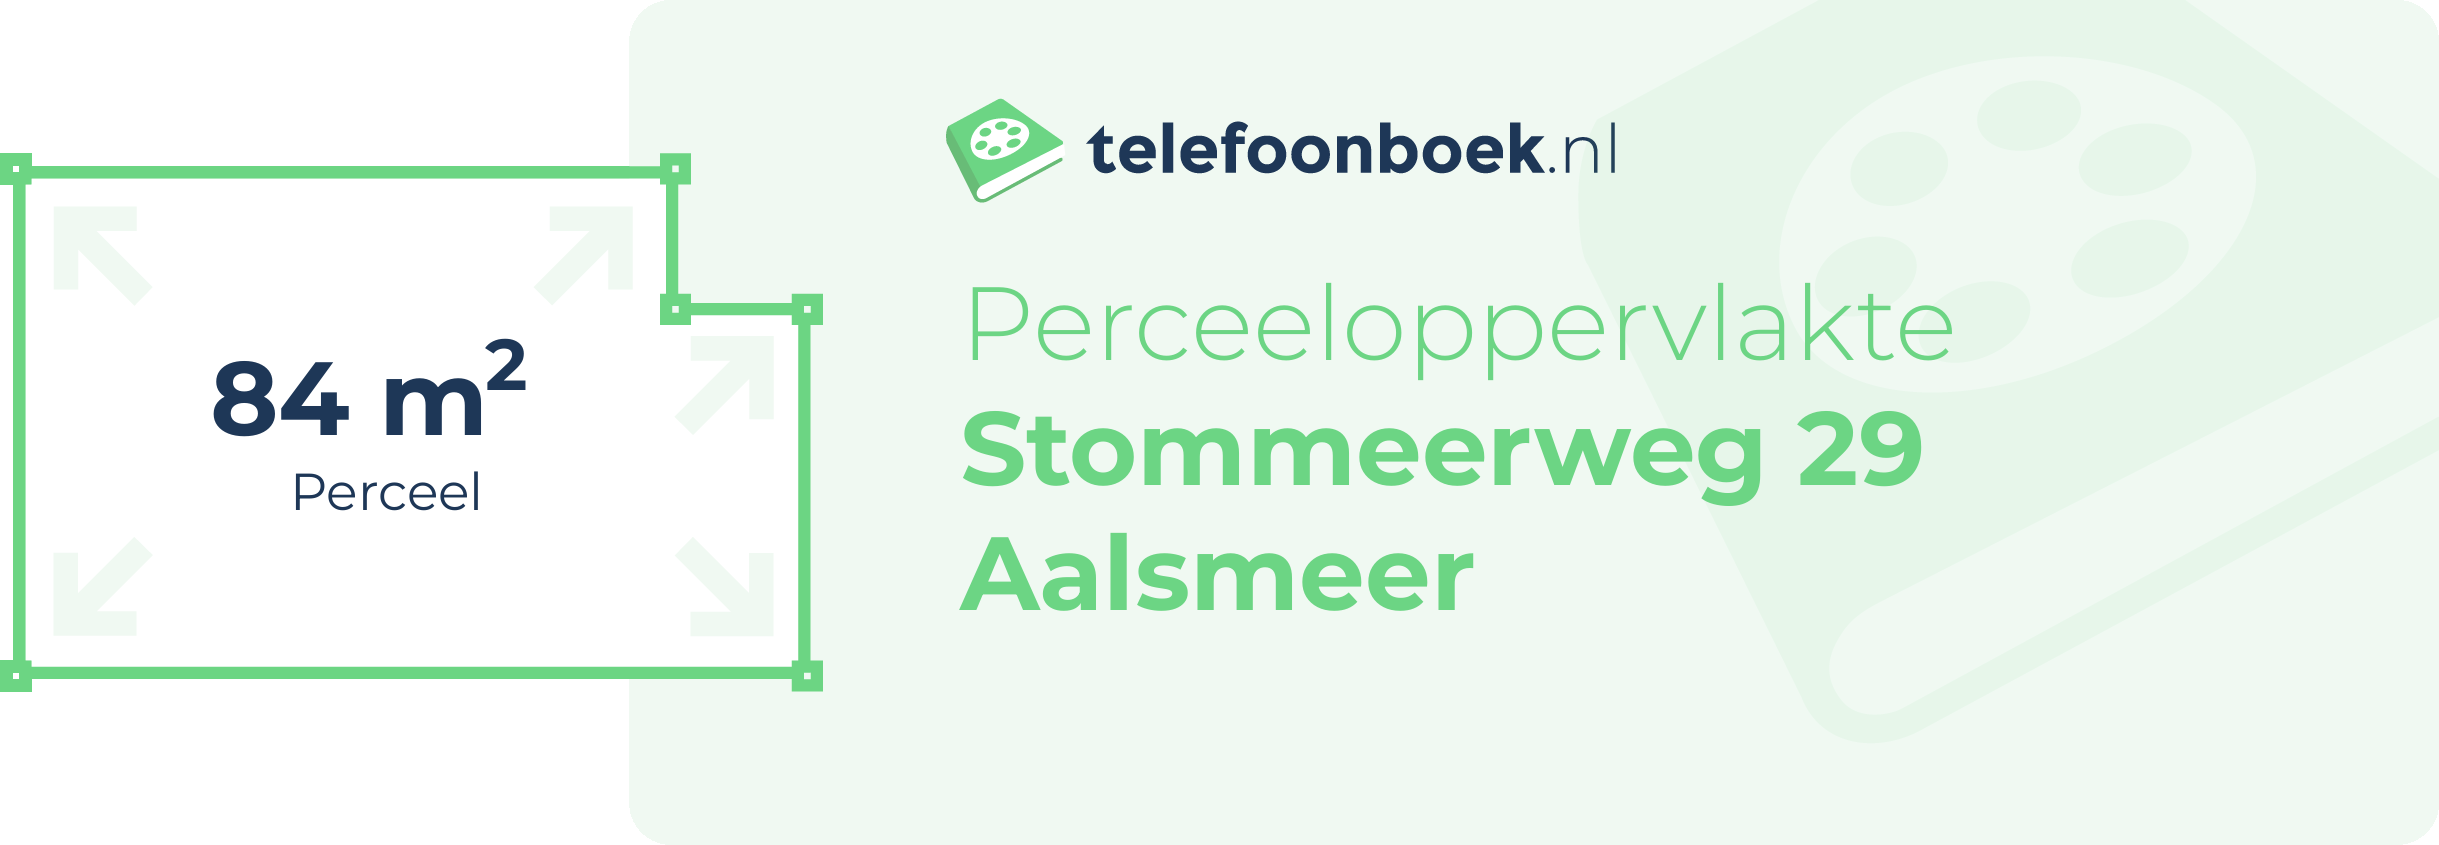 Perceeloppervlakte Stommeerweg 29 Aalsmeer